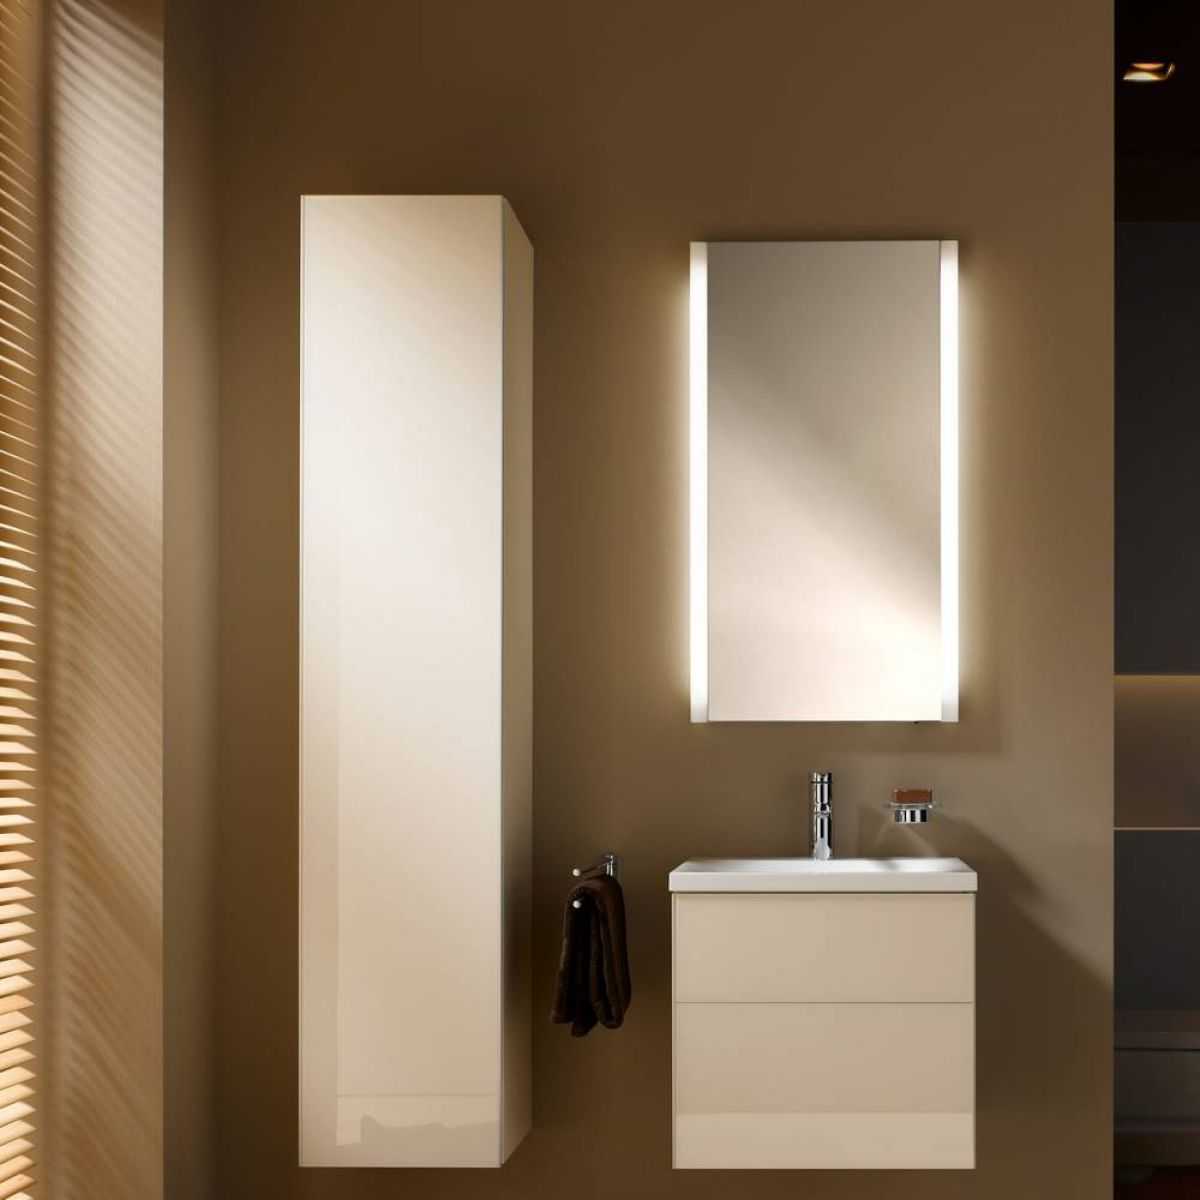 Круглое зеркало в ванную комнату с подсветкой: как выбрать зеркало с led-подсветкой? какие у него особенности?